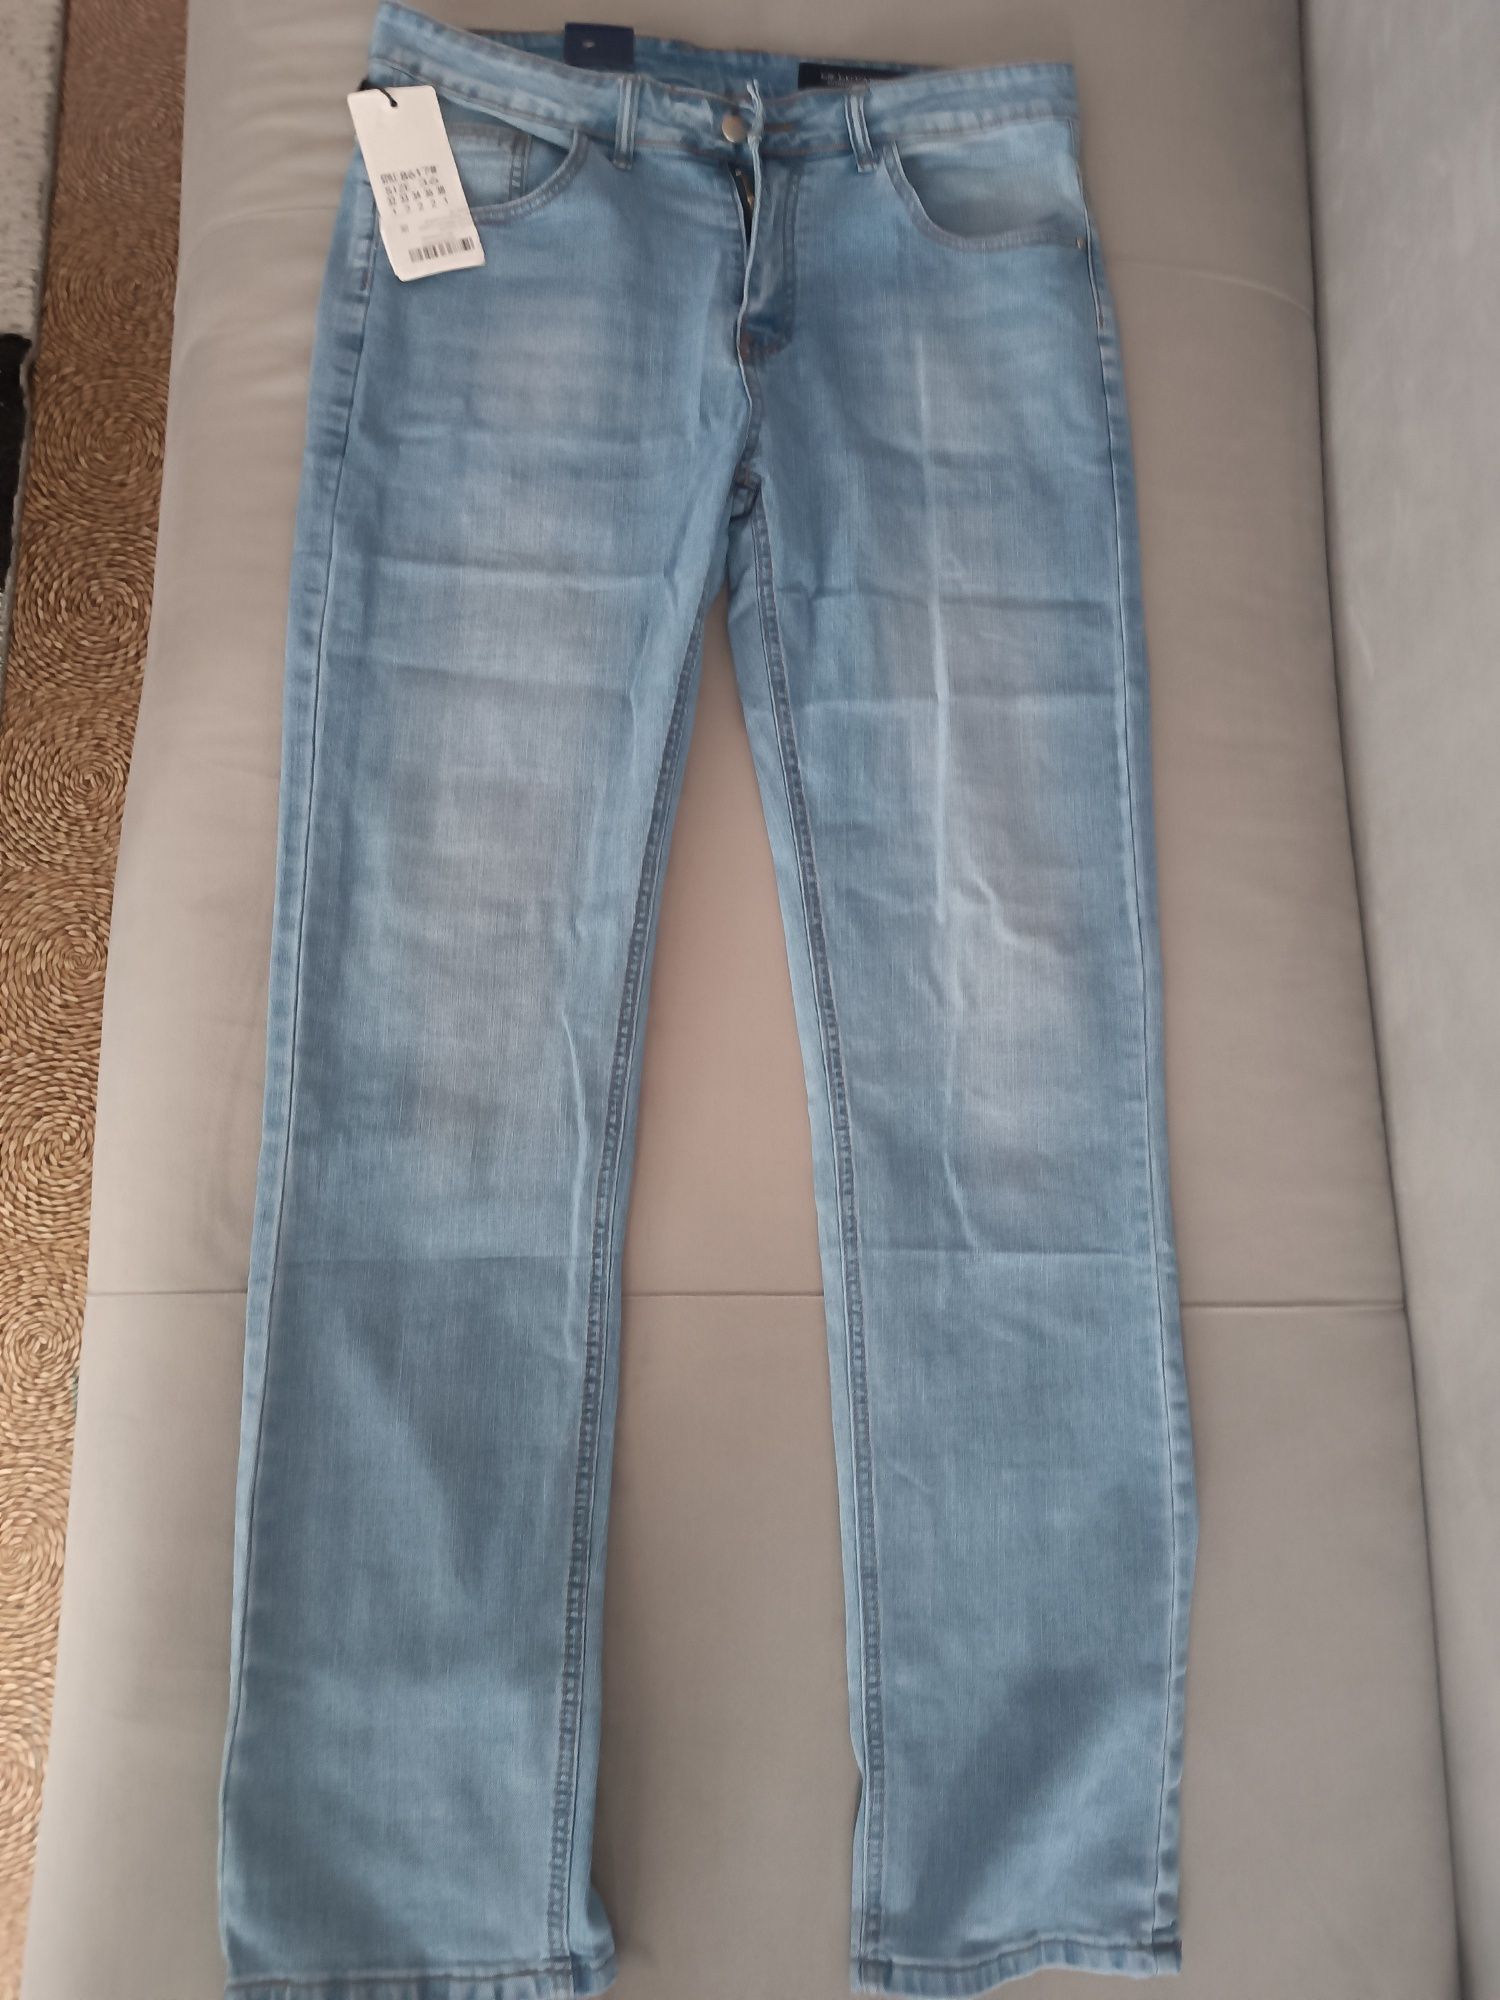 Продам новые мужские джинсы размер XL